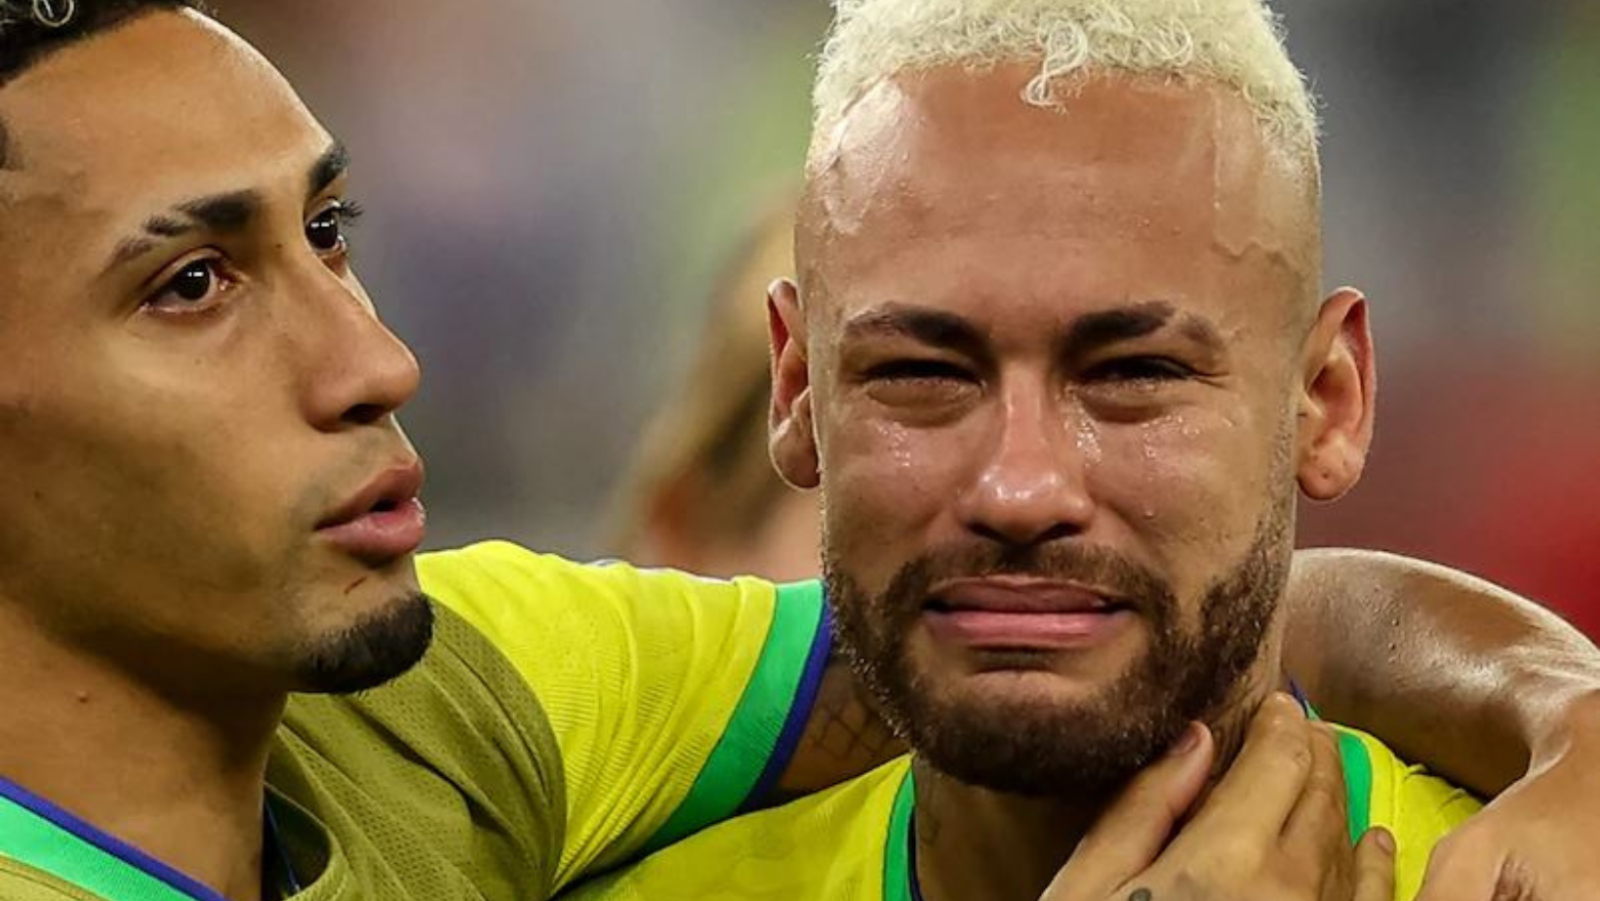 Ronaldo - Đường hầm là nơi hậu trường của trận đấu, và đó cũng chính là nơi Ronaldo đã rơi nước mắt sau thất bại của đội tuyển Bồ Đào Nha trong World Cup